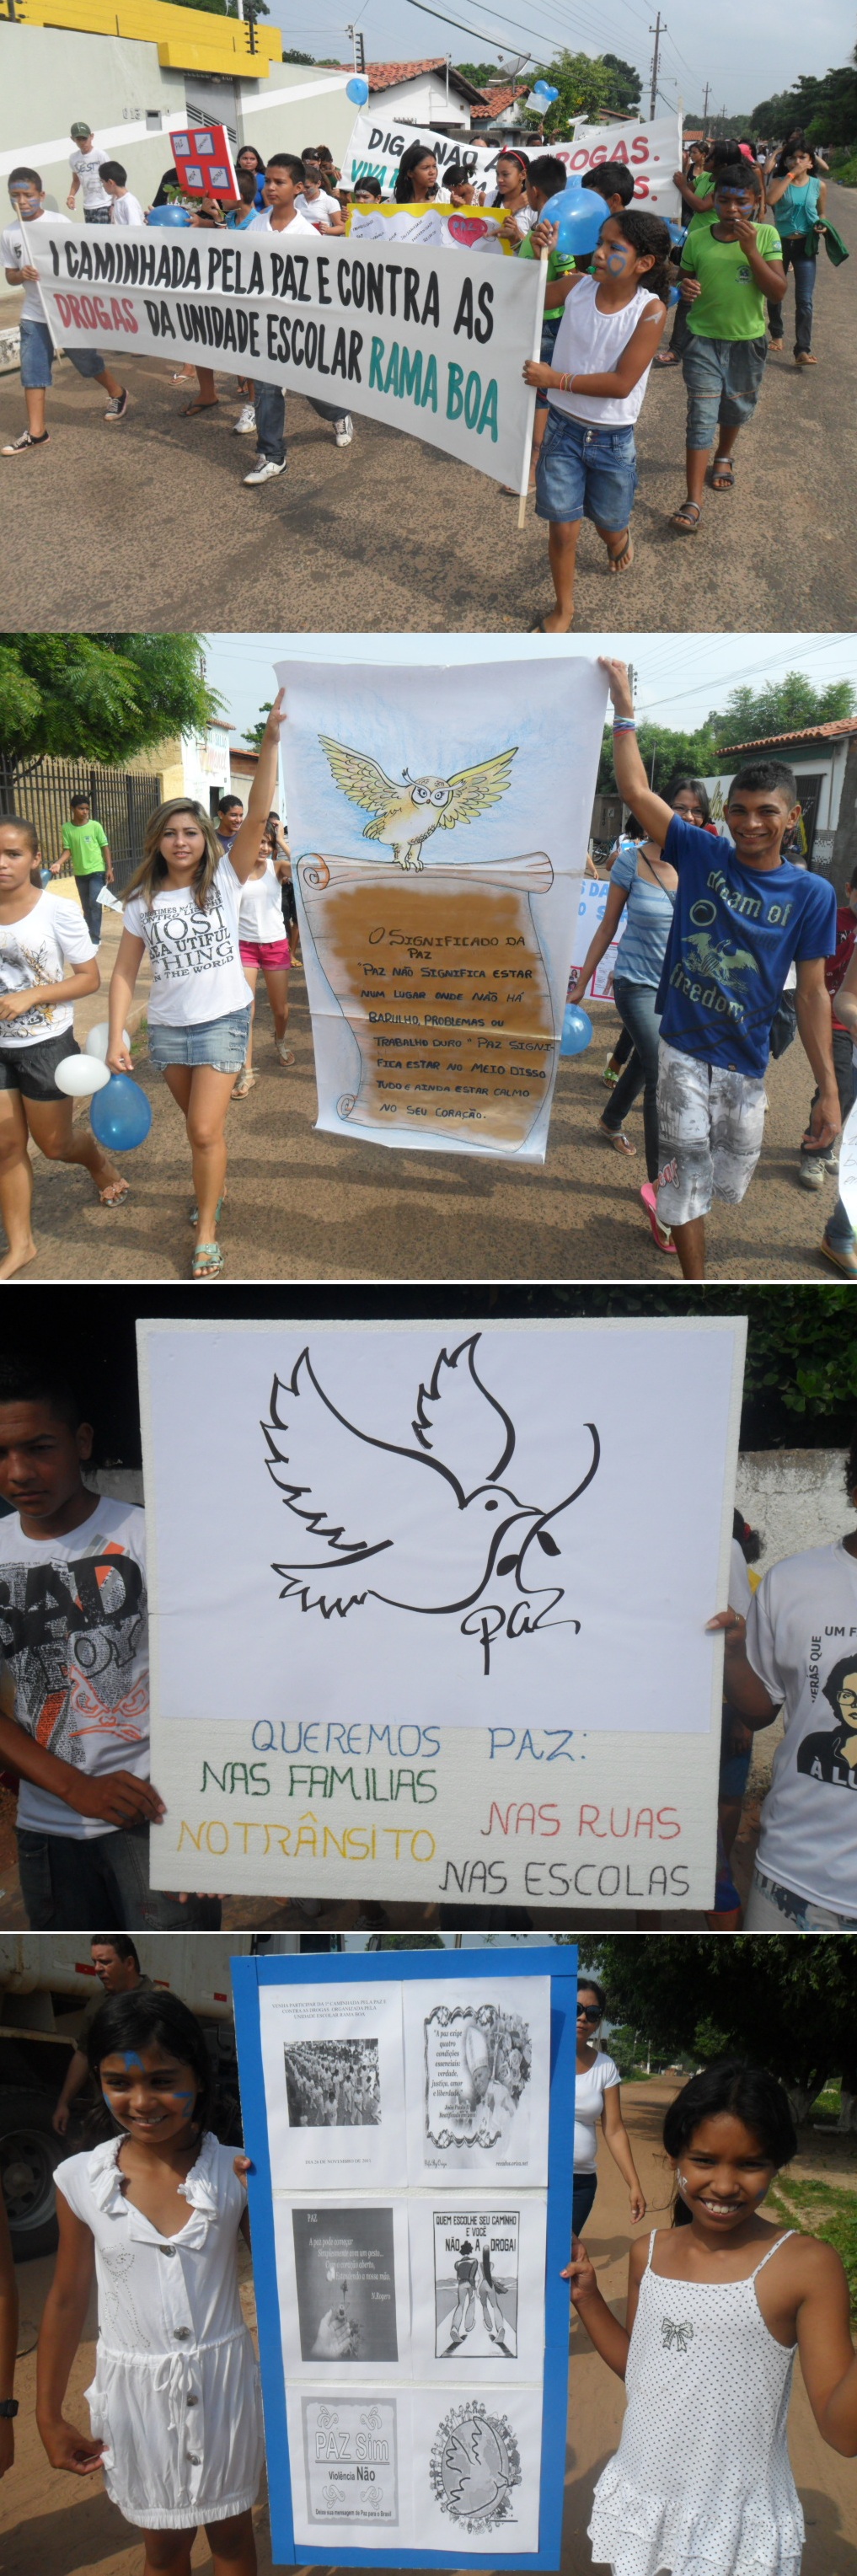 Rama Boa realiza I caminhada pela paz e contra as drogas